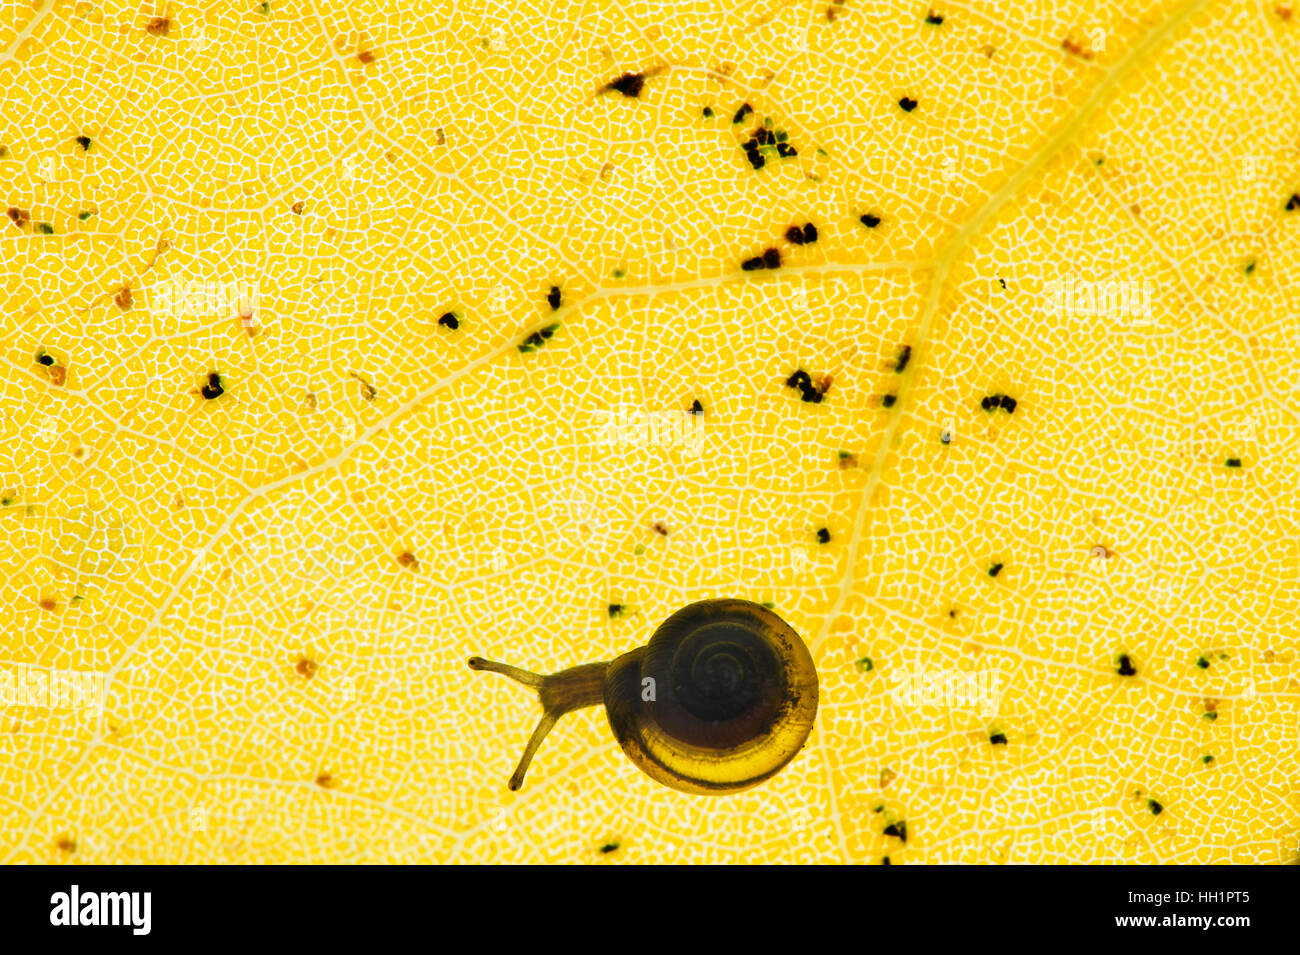 Eine kleine Schnecke ist gegen das Muster von einem großen gelben Blatt Silhouette. Stockfoto